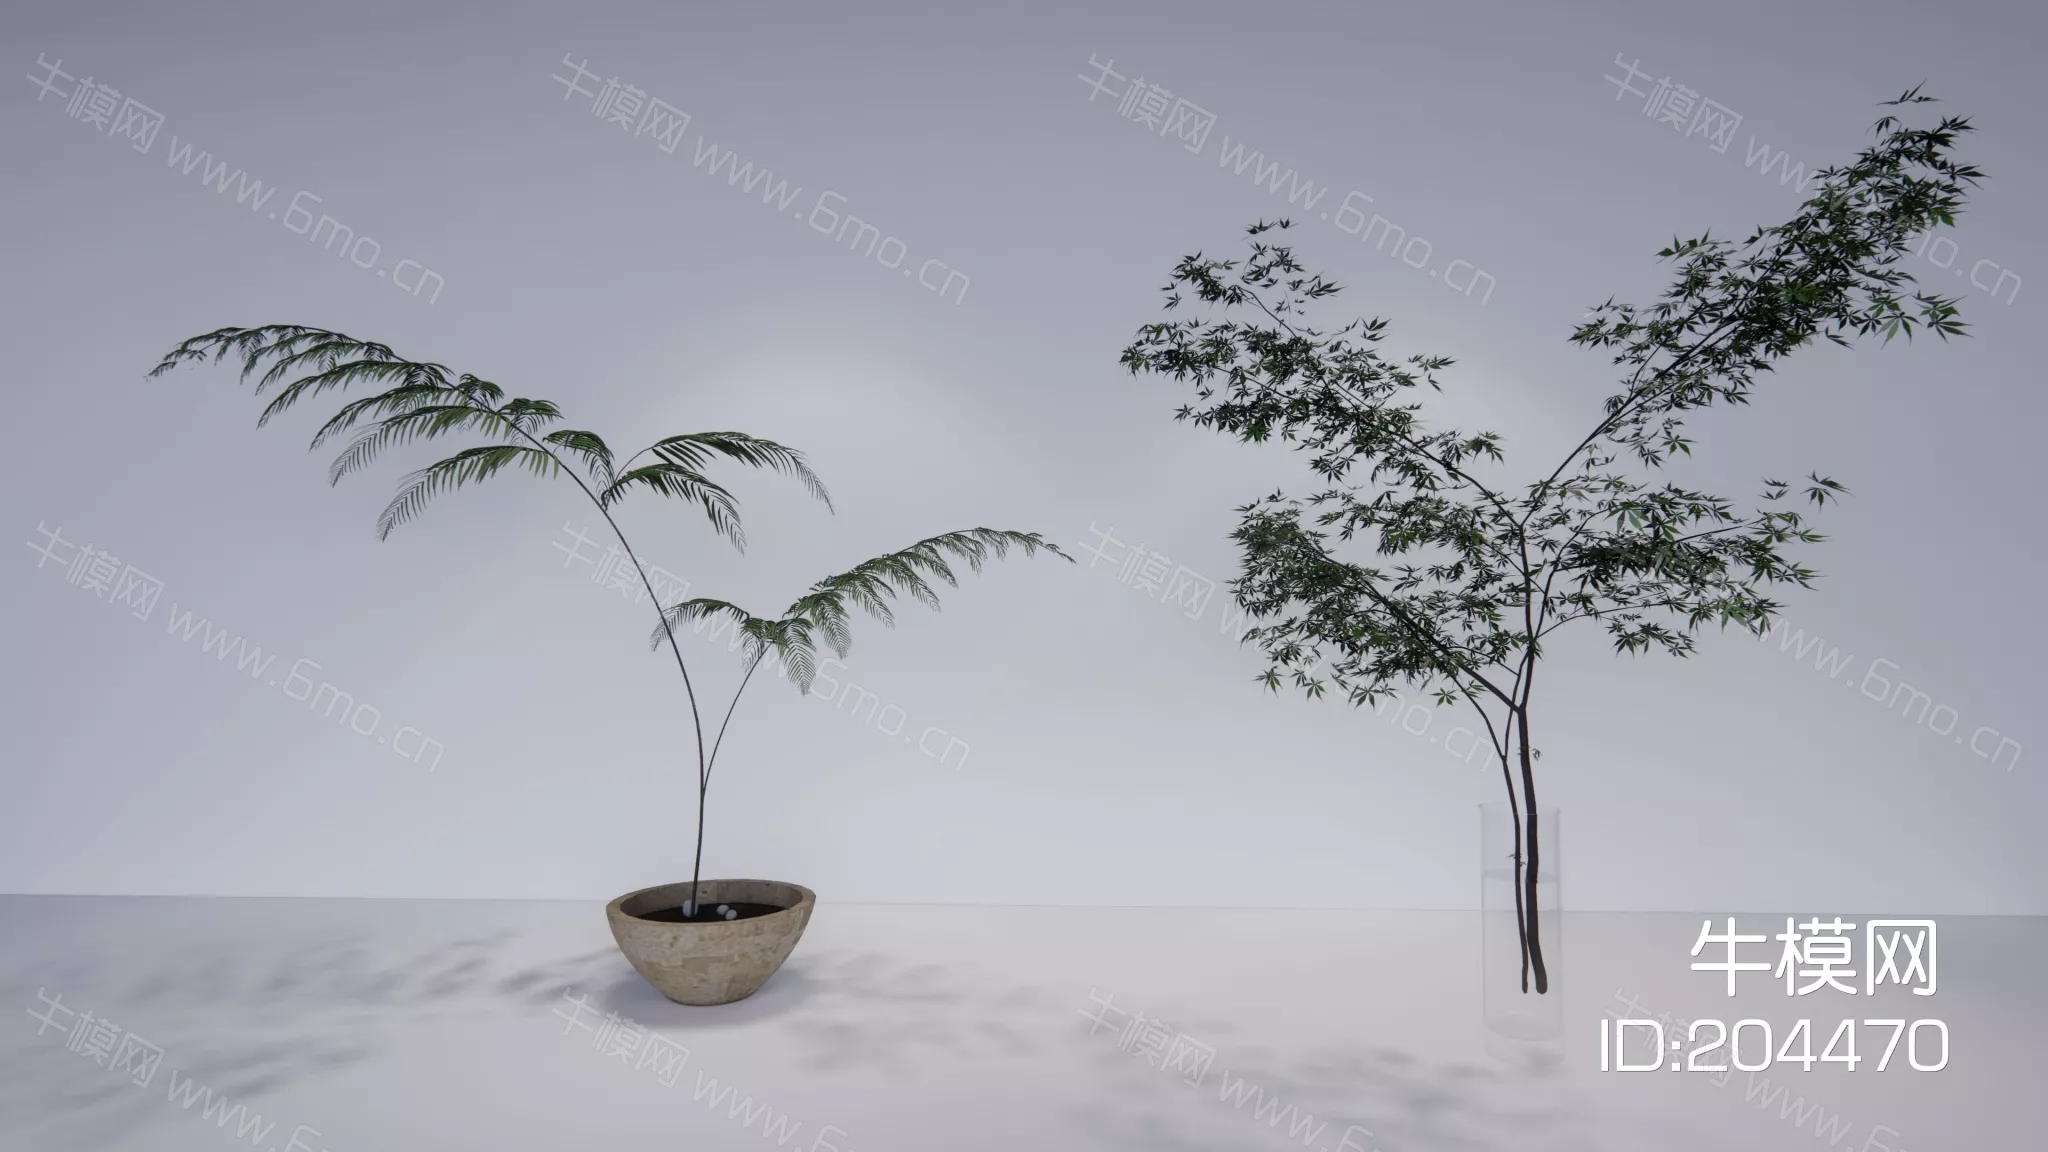 MODERN POTTED PLANT - SKETCHUP 3D MODEL - ENSCAPE - 204470